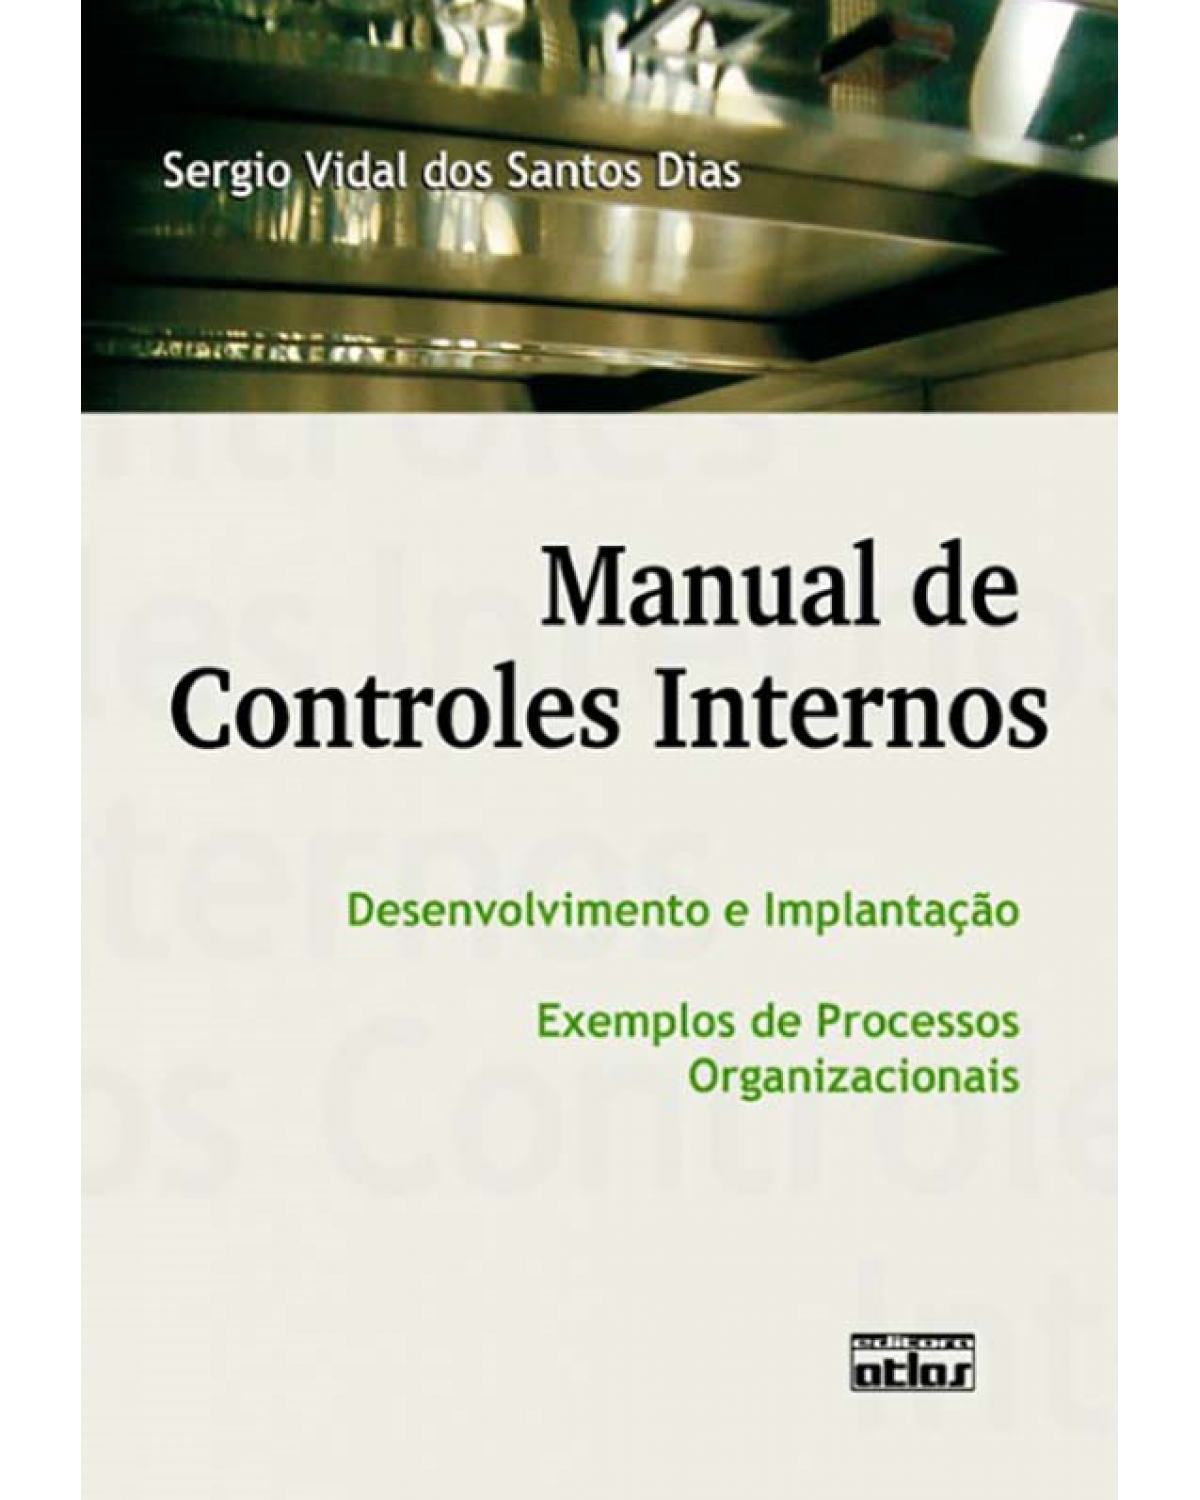 Manual de controles internos - Desenvolvimento e implantação - Exemplos de processos organizacionais - 1ª Edição | 2010